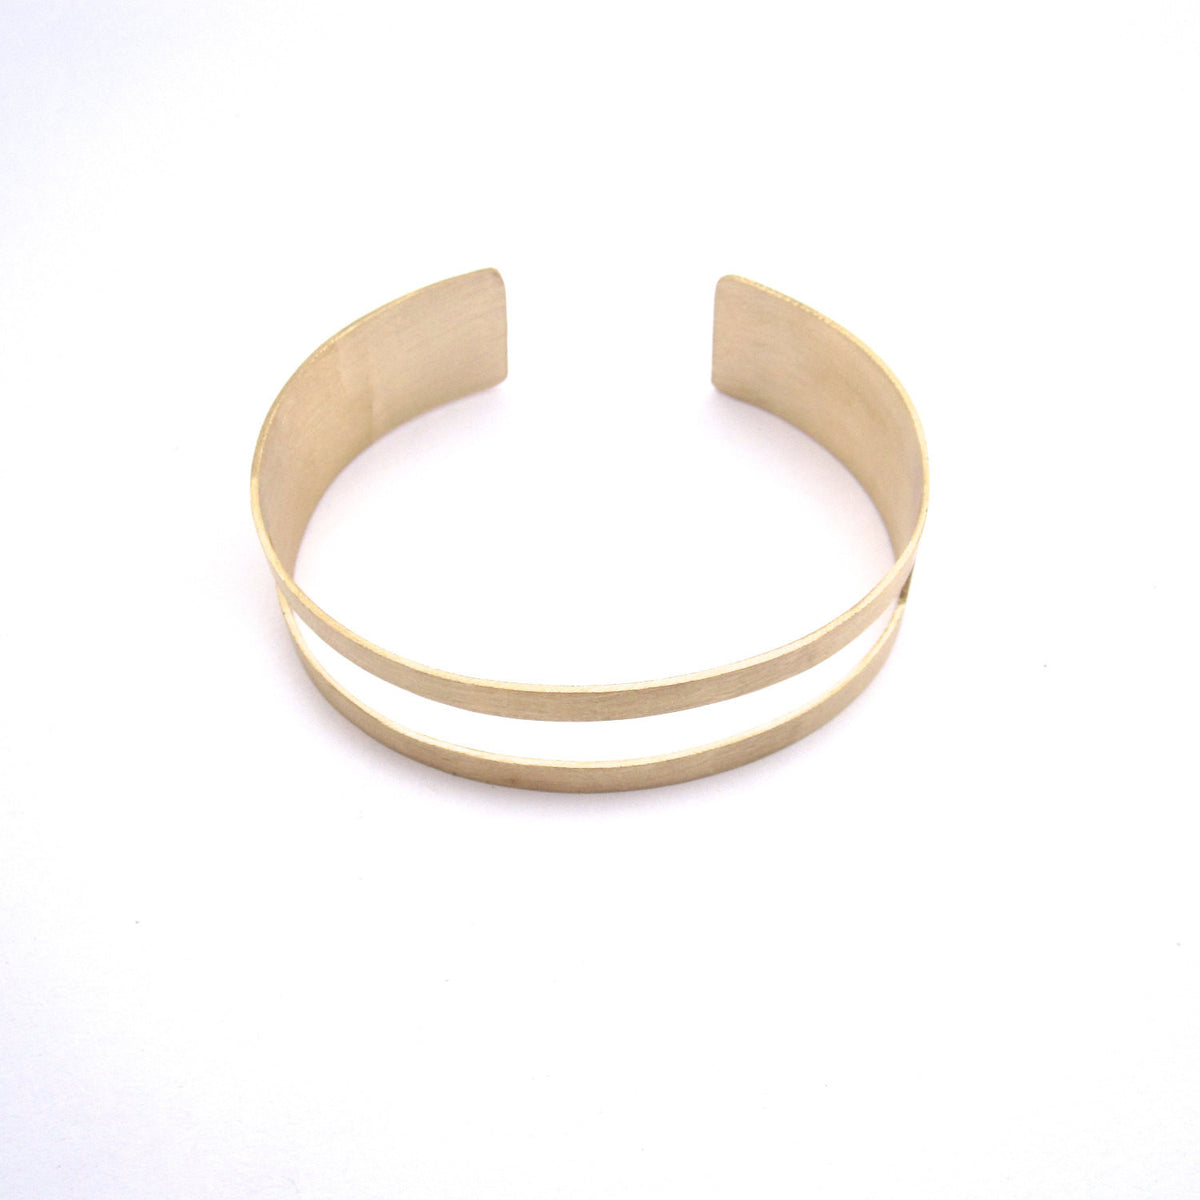 Chic Gold Tone, Brass Square Open Cut Cuff Hand-Made Bracelet - 0185 - Virginia Wynne Designs